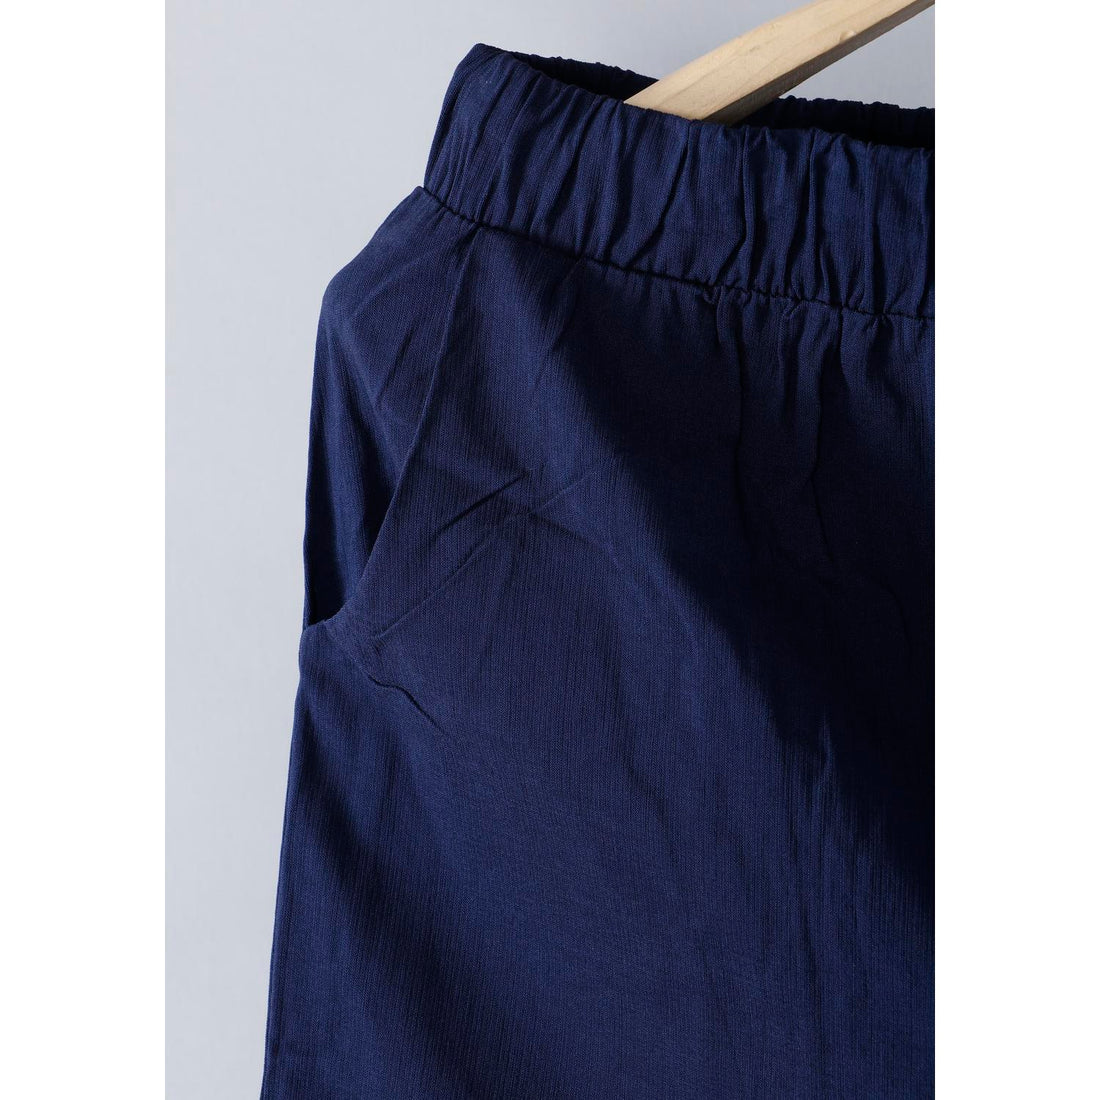 Women's Navy Blue Colour Cotton Pant